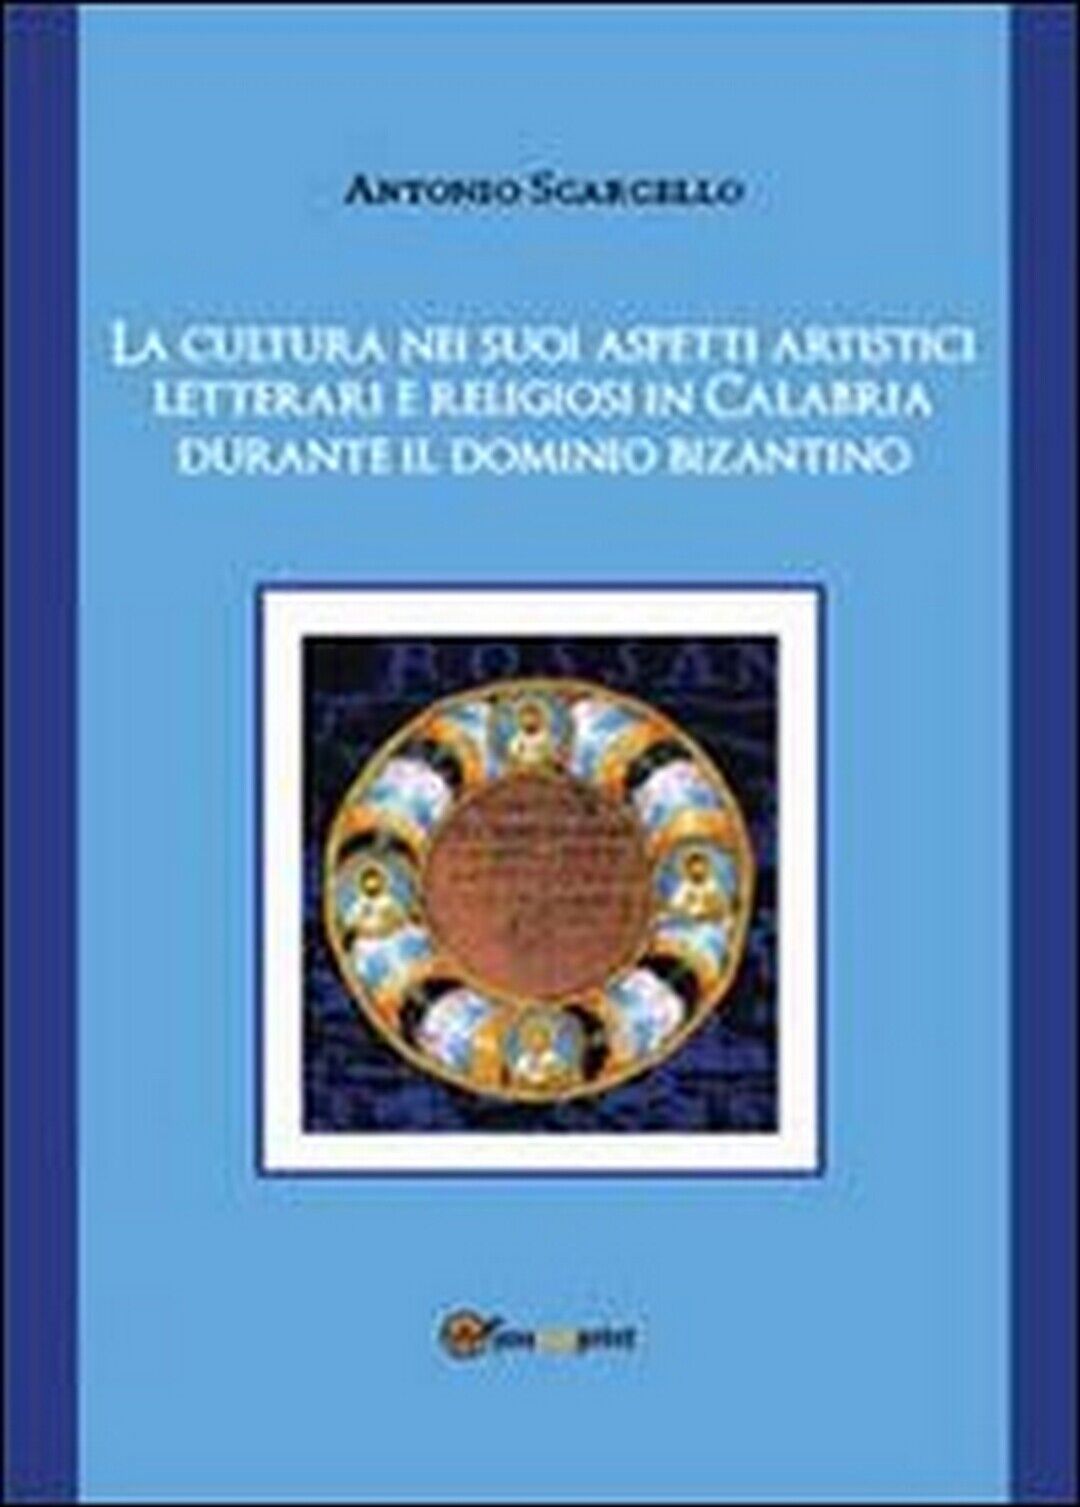 La cultura nei suoi aspetti artistici, letterari e religiosi in Calabria durante